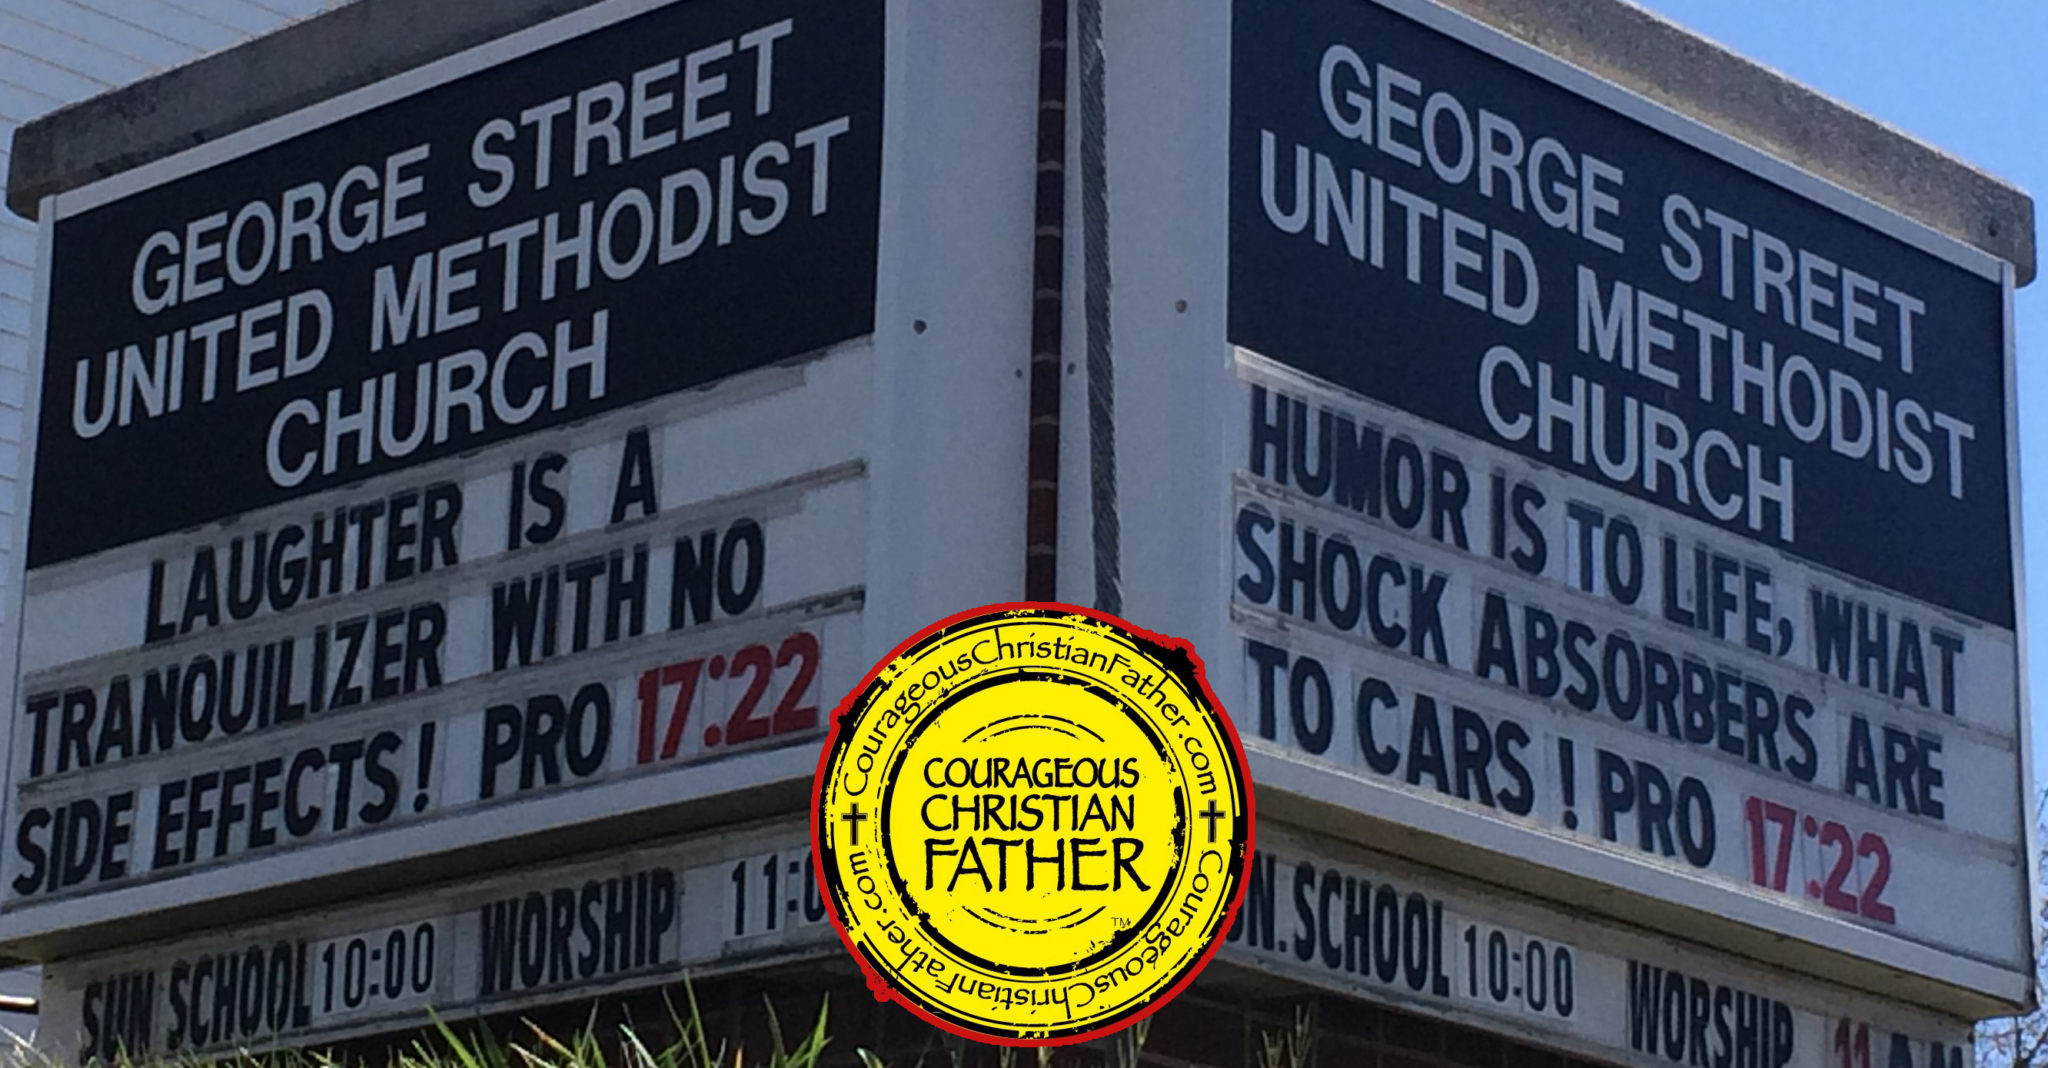 Proverbs 17:22 Church Sign - George Street United Methodist Church